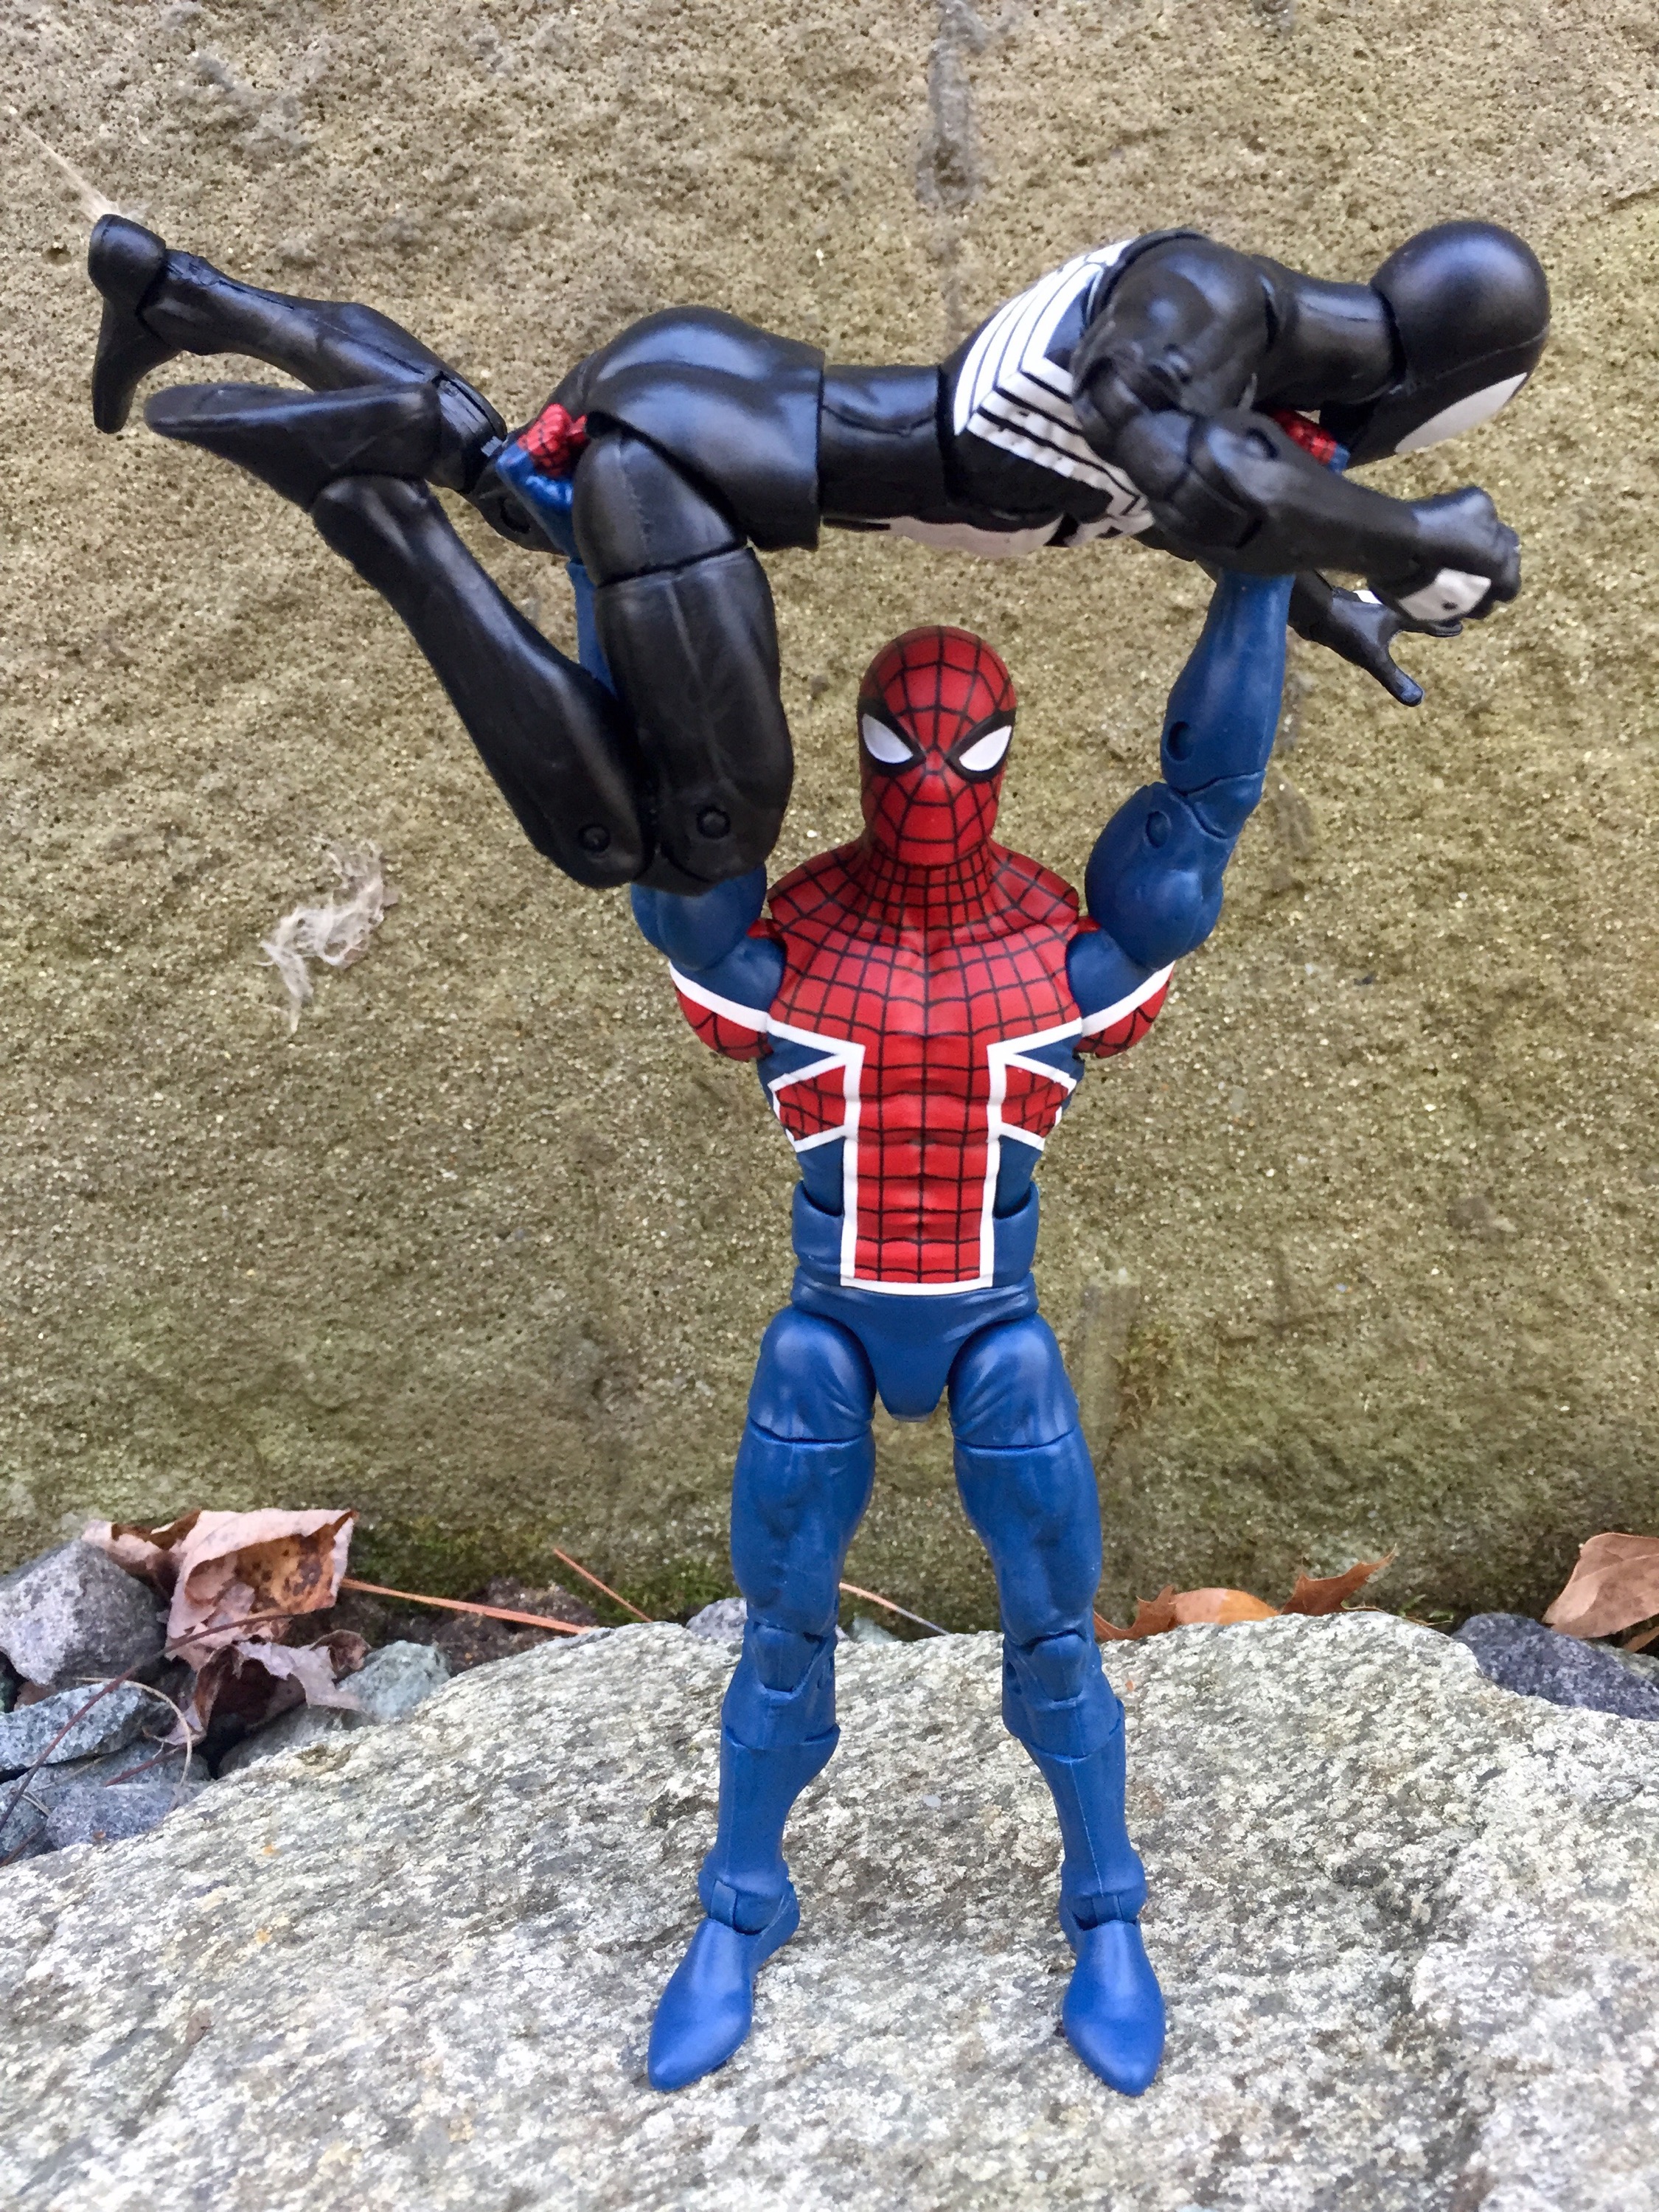 man spider marvel legends